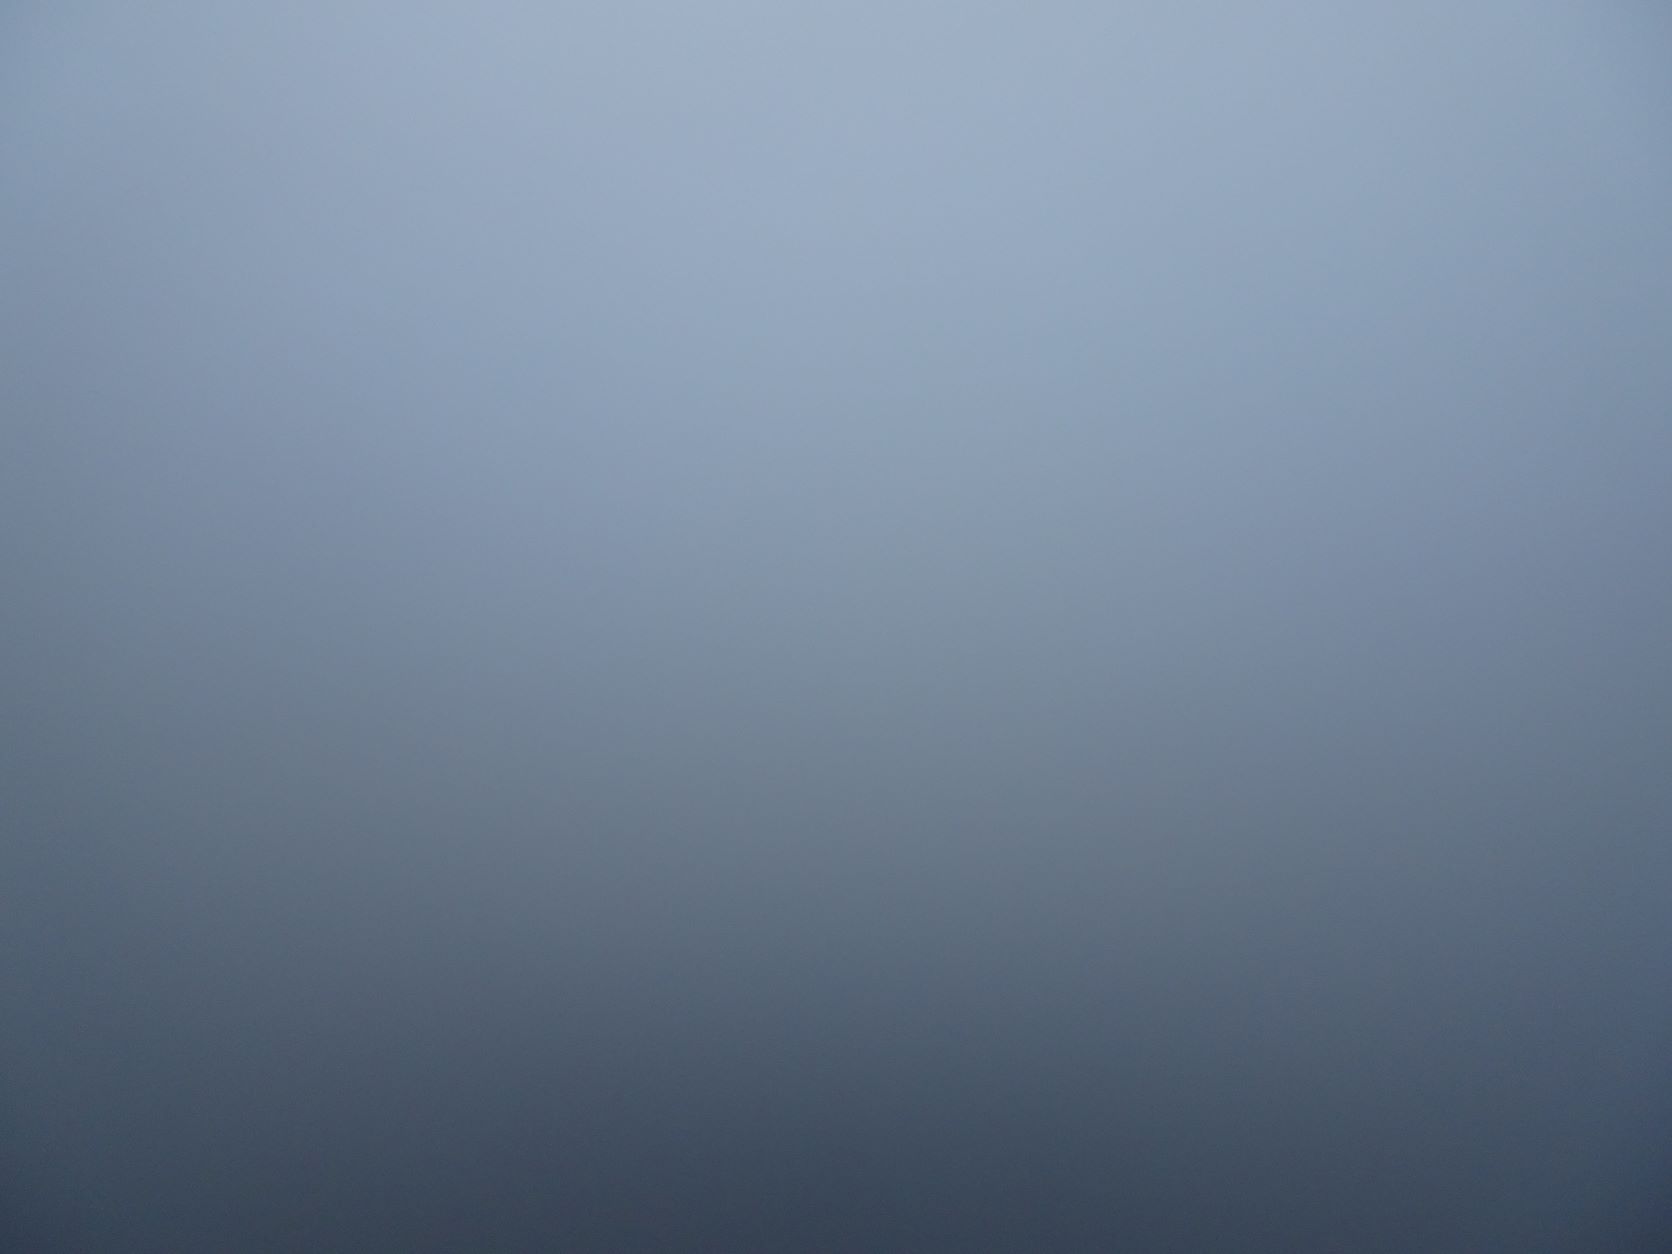  Trotz hellem Nebel- Sicht gleich null 